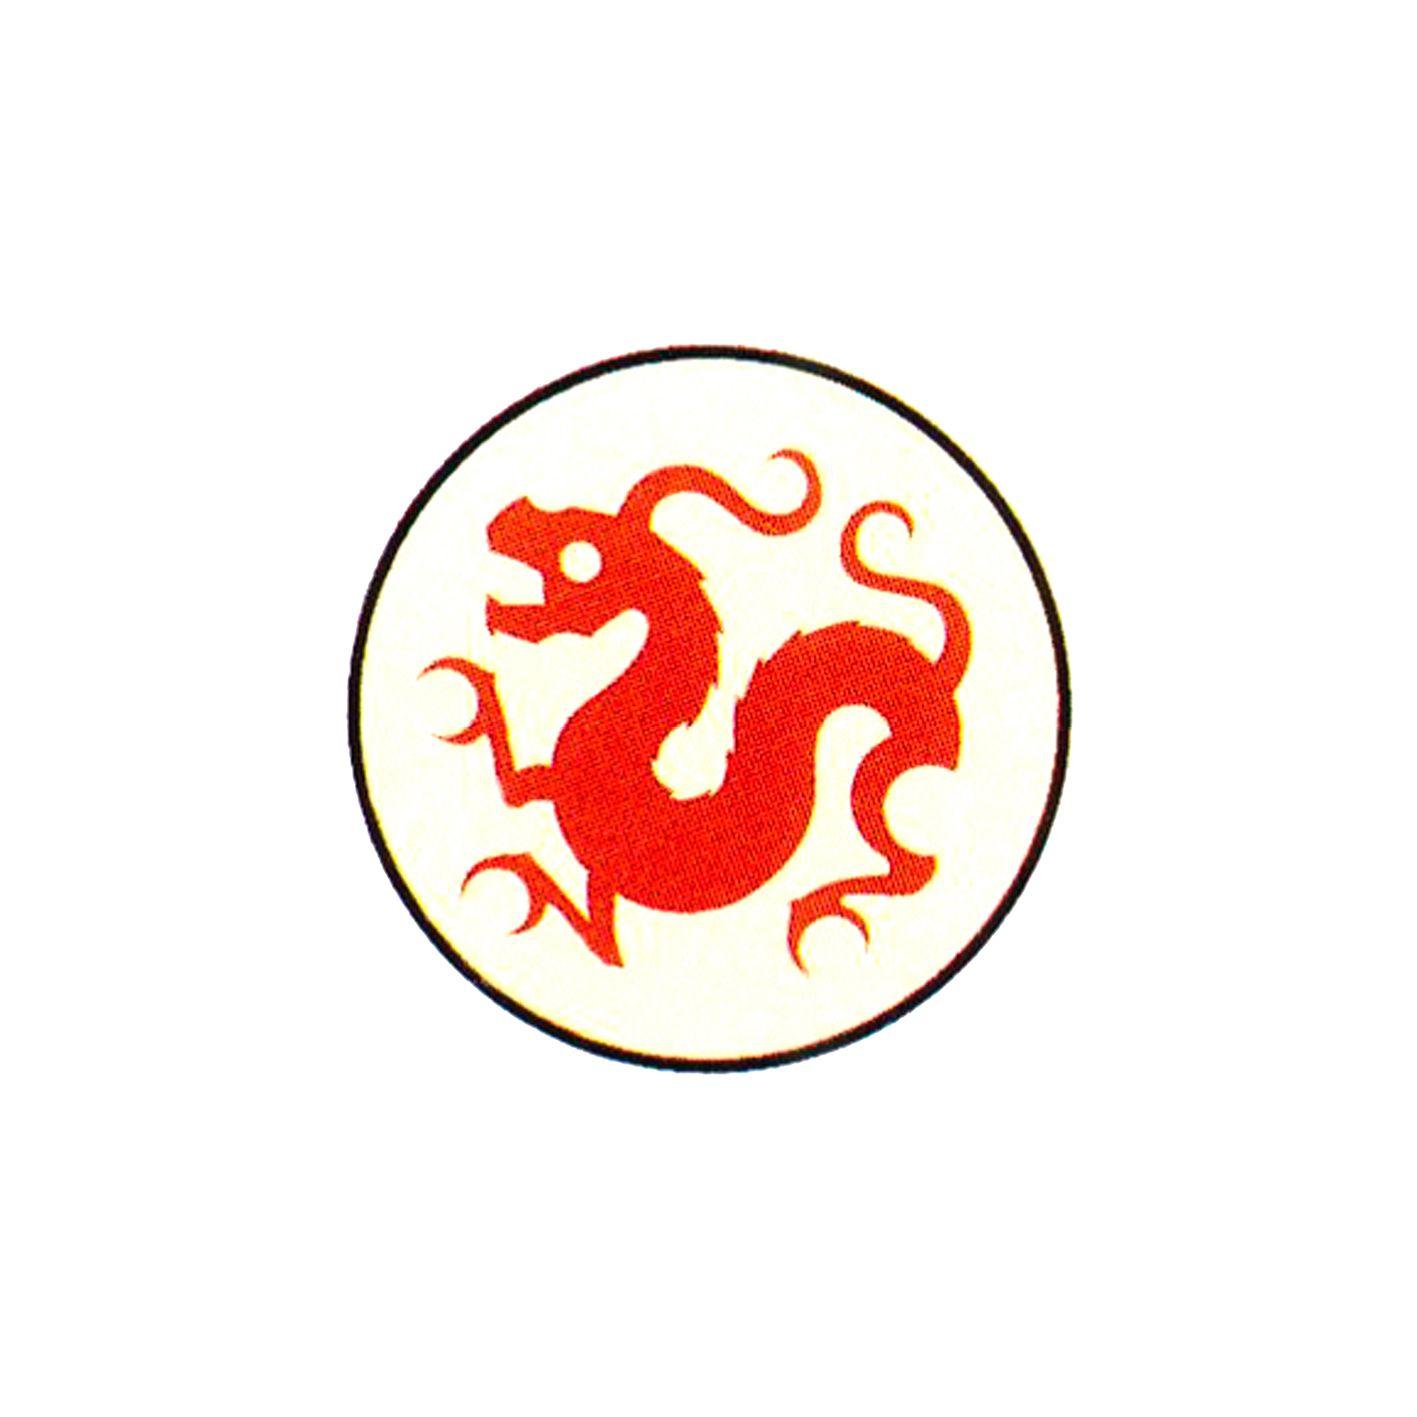 China Company Logo - China Bowl Trading Company Logo - Graphis